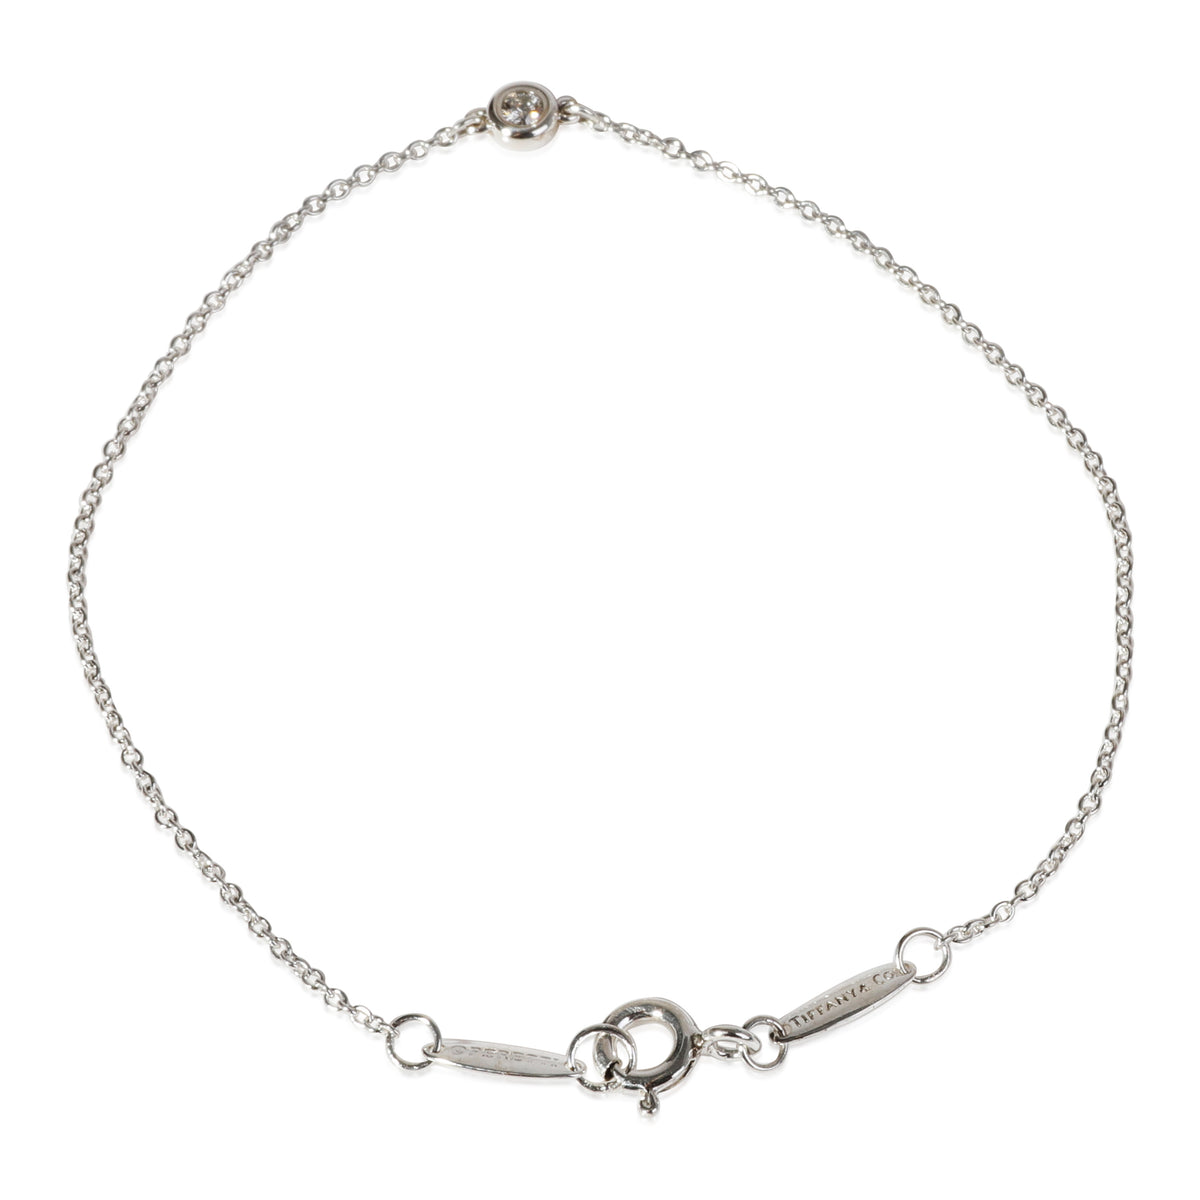 Tiffany & Co. Elsa Peretti Diamond Bracelet in Sterling Silver 0.05 CTW